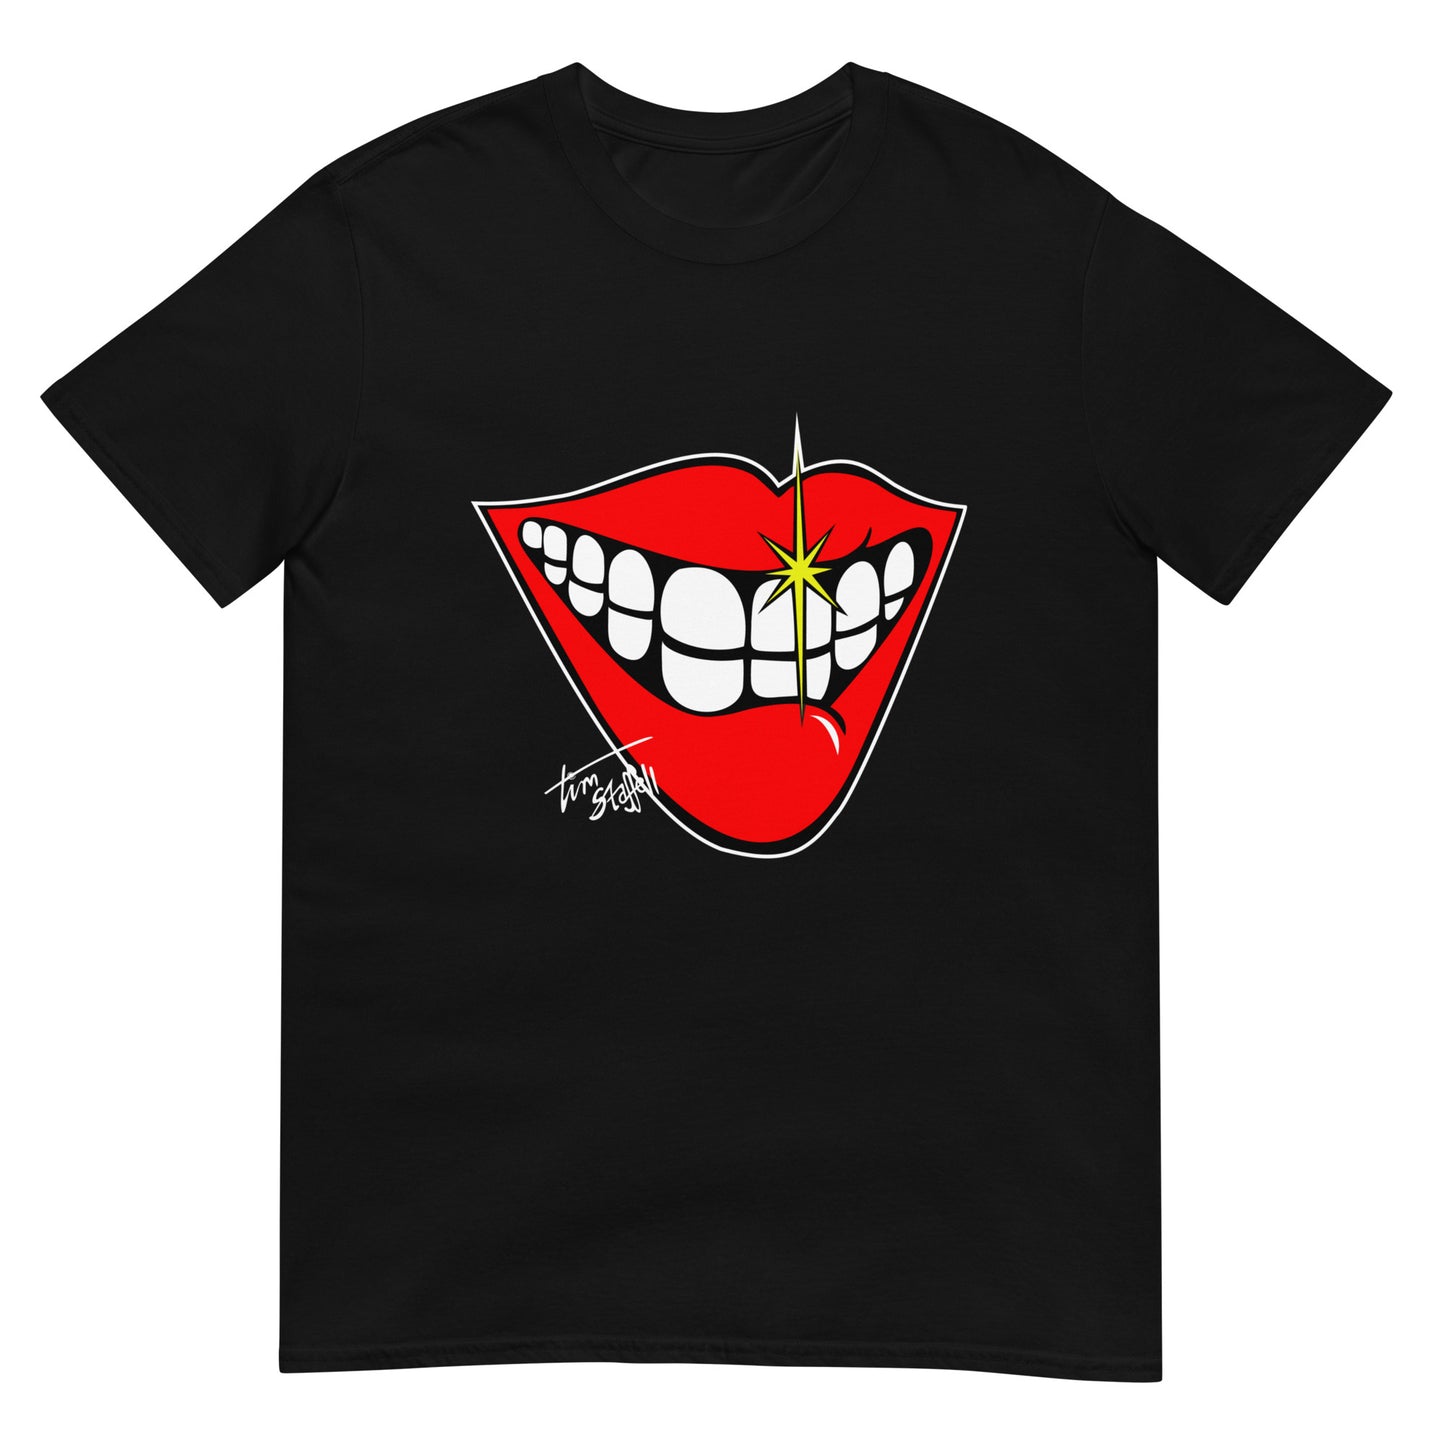 'Smile' - Unisex T-Shirt